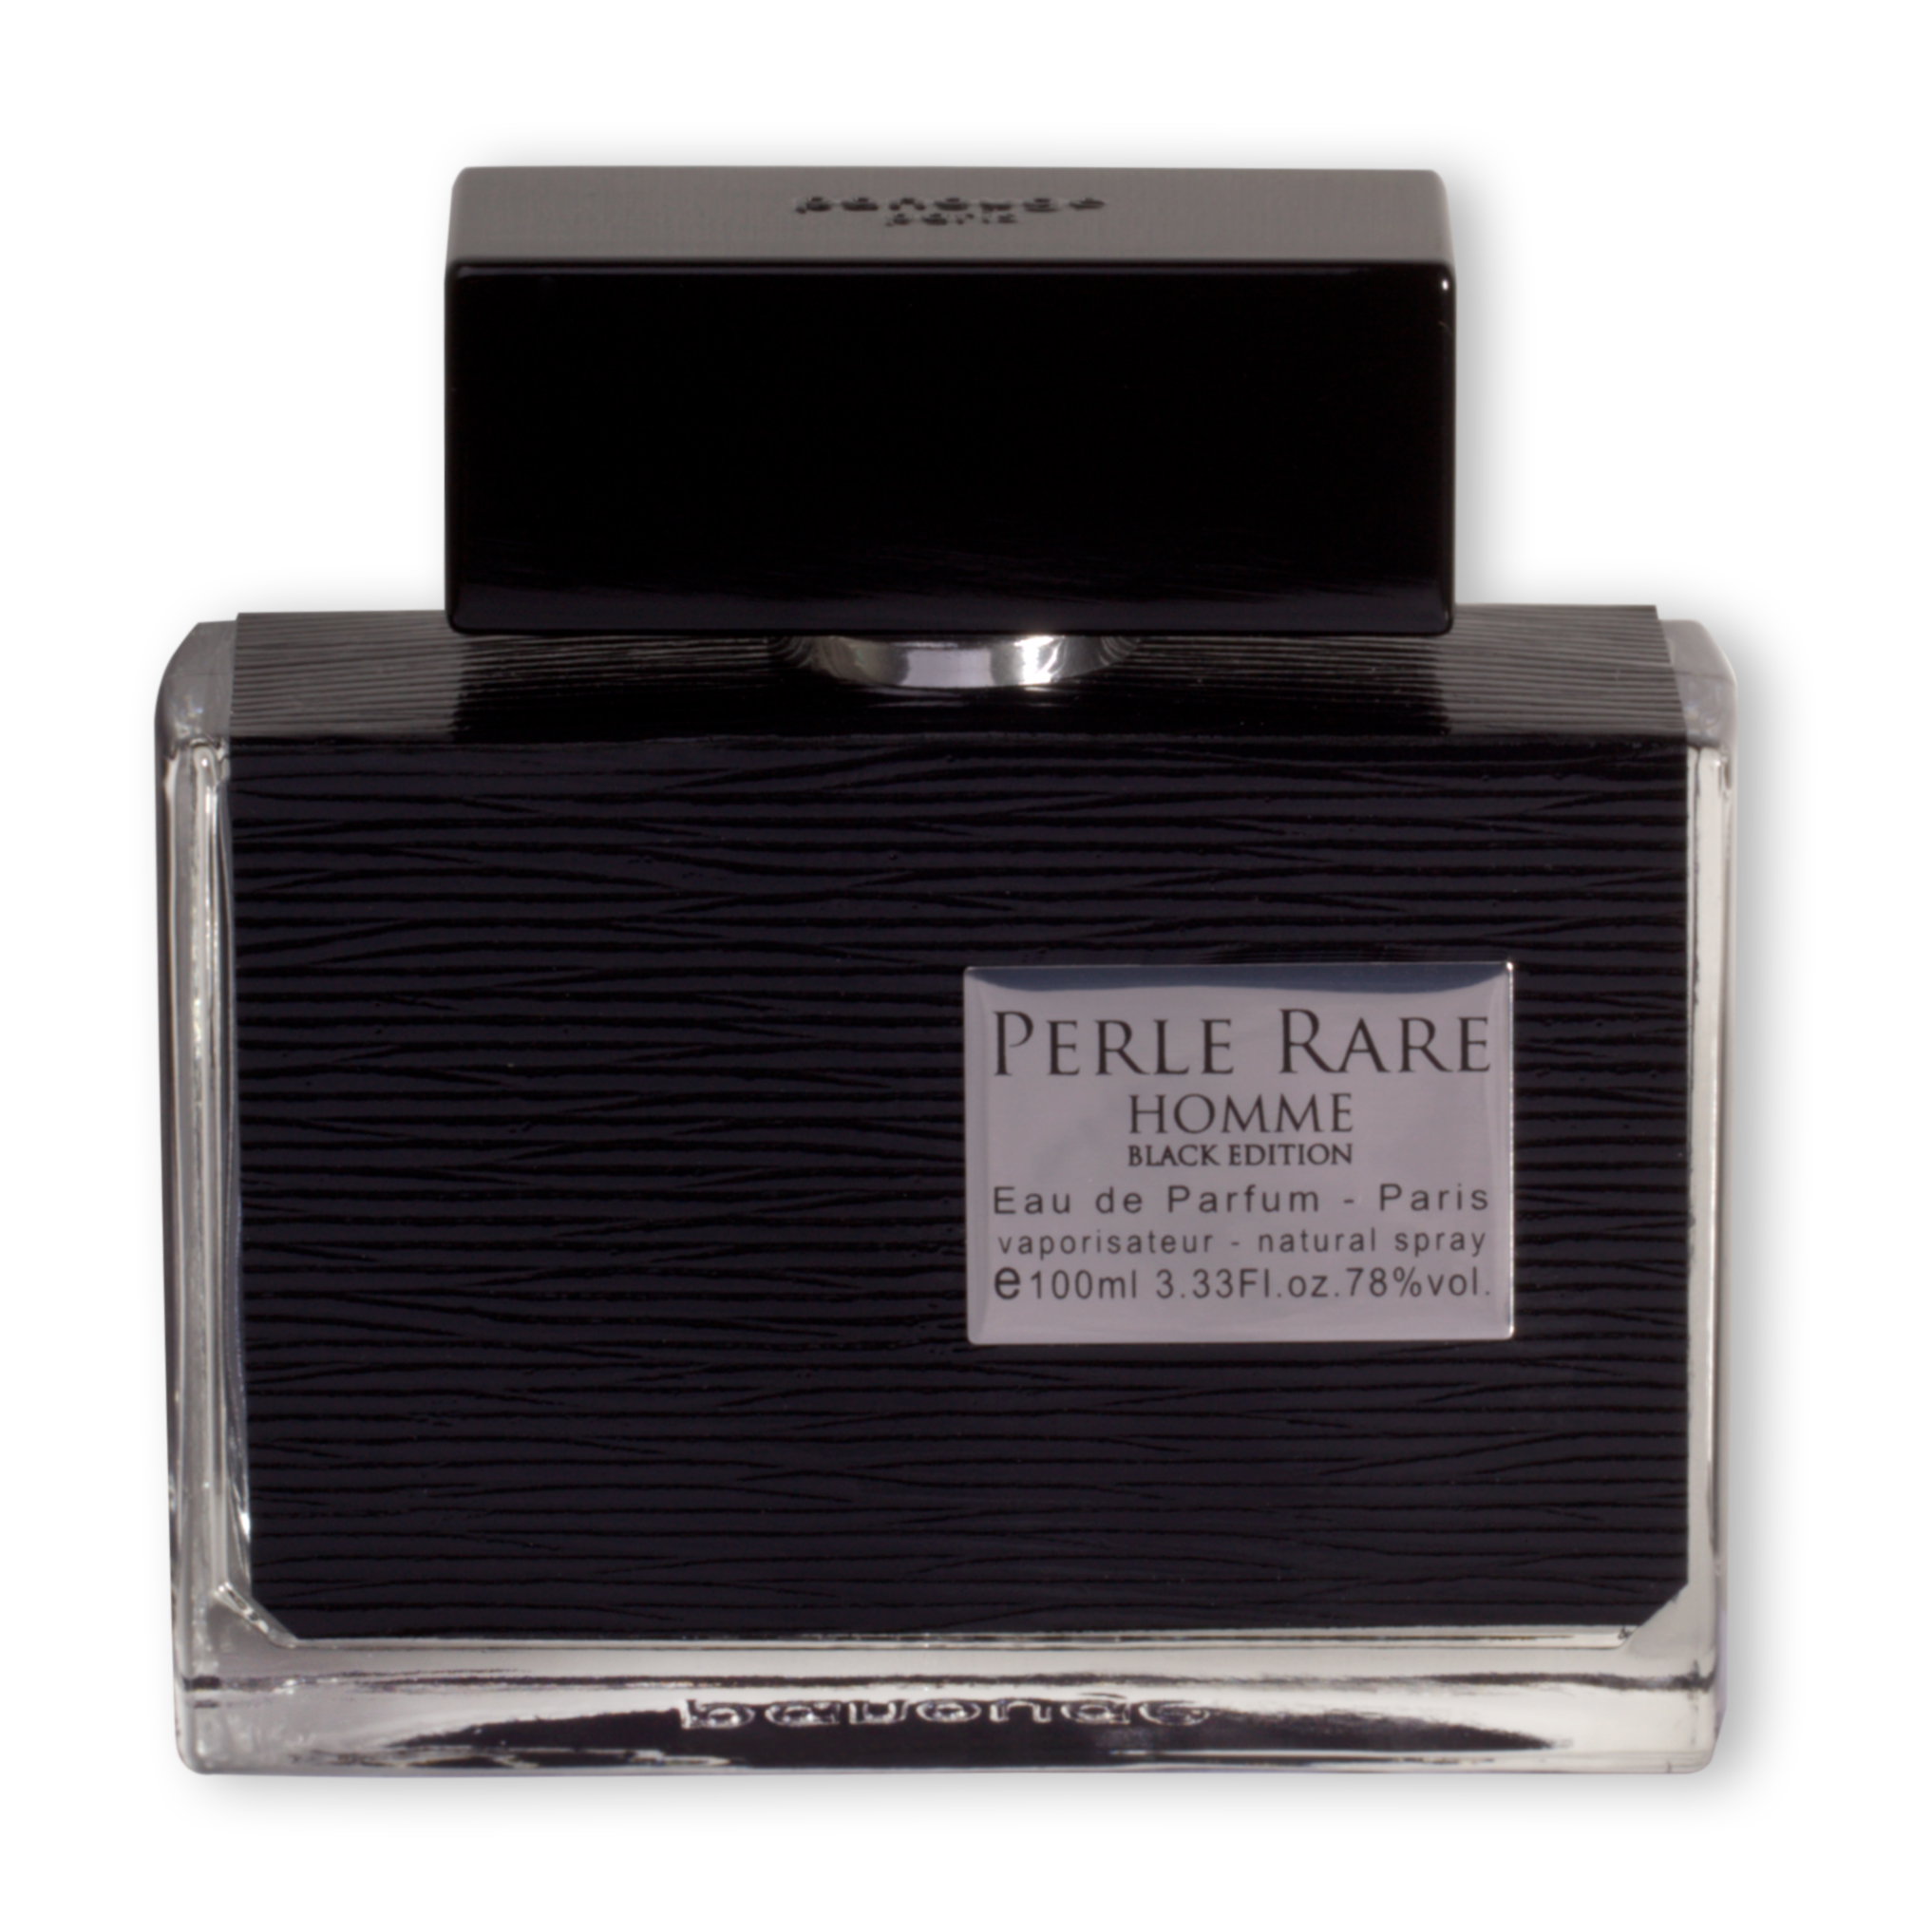 Panouge Paris Perle Rare Homme Black Edition Eau de Parfum Abfüllung 5 ml